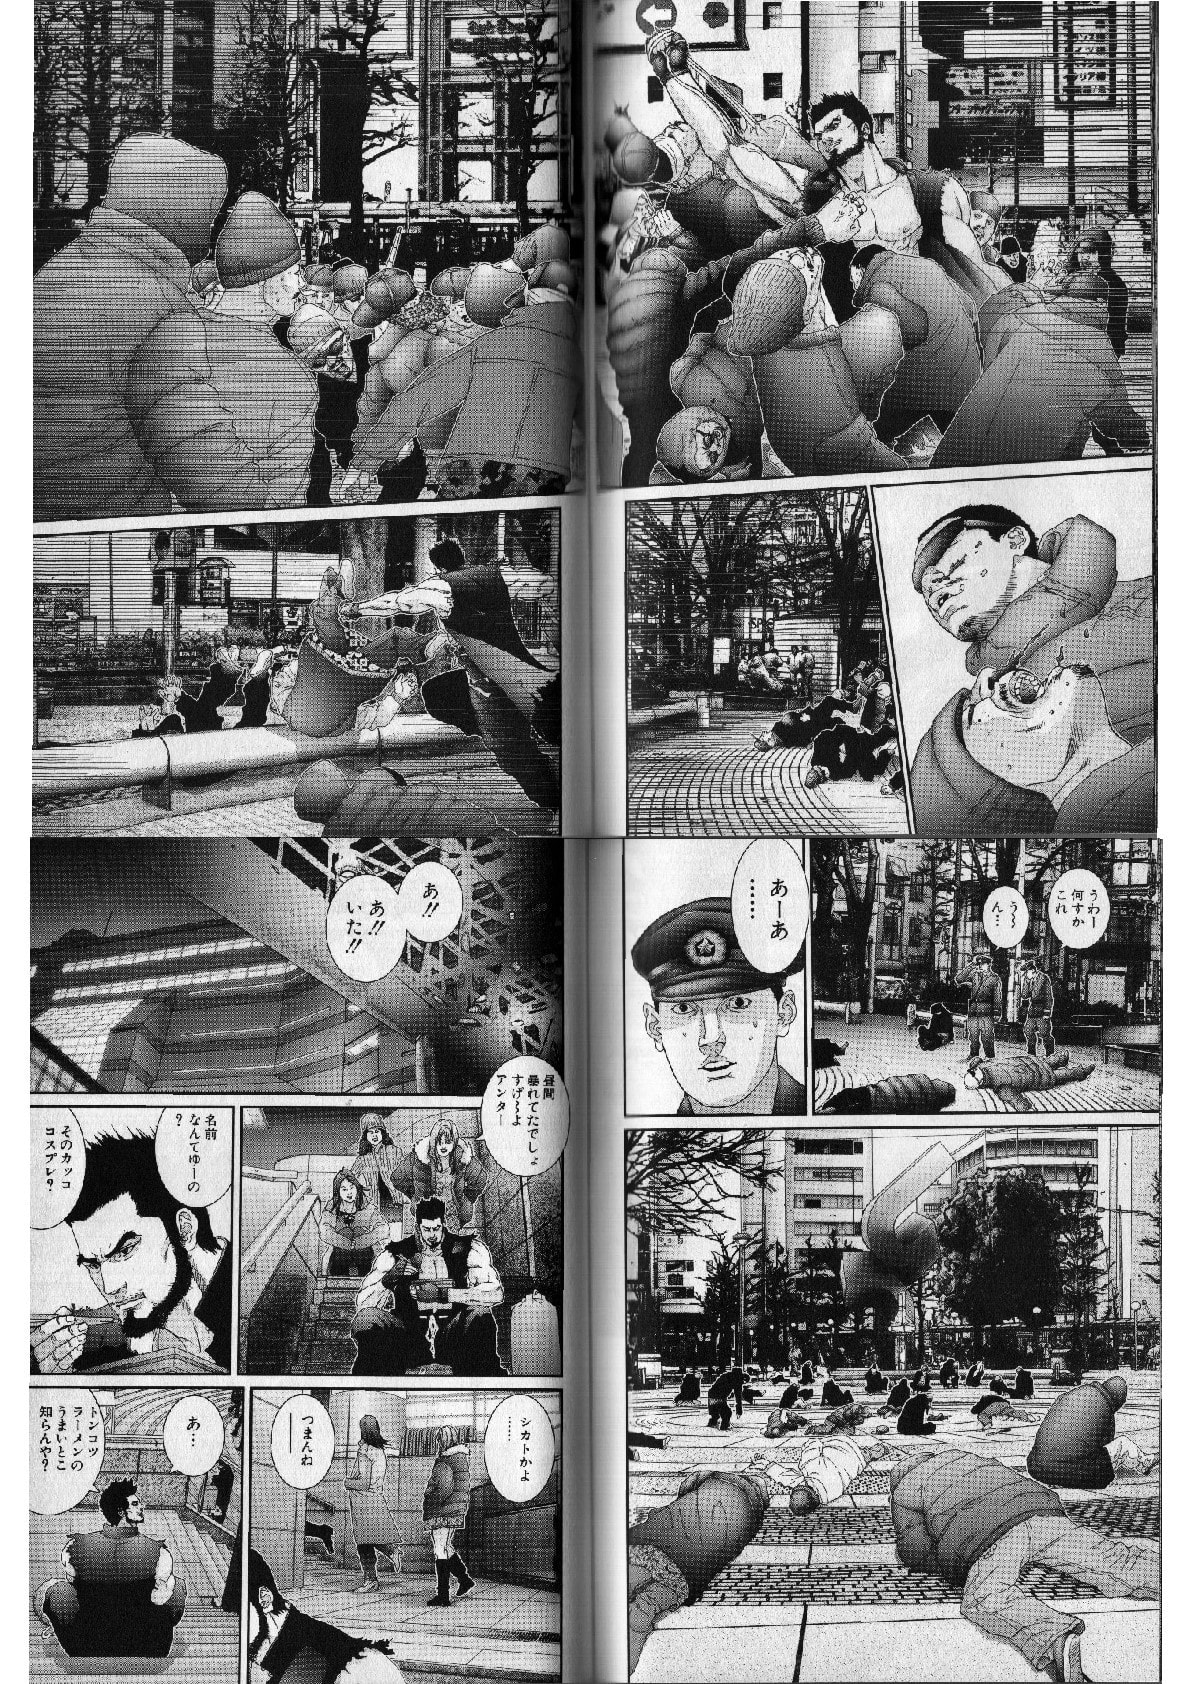 Gantz ガンツ 博多から東京に出てきた筋肉ライダー 個人的に気に入った漫画だったり 書籍だったりを気まぐれで紹介するモトブログおじさん